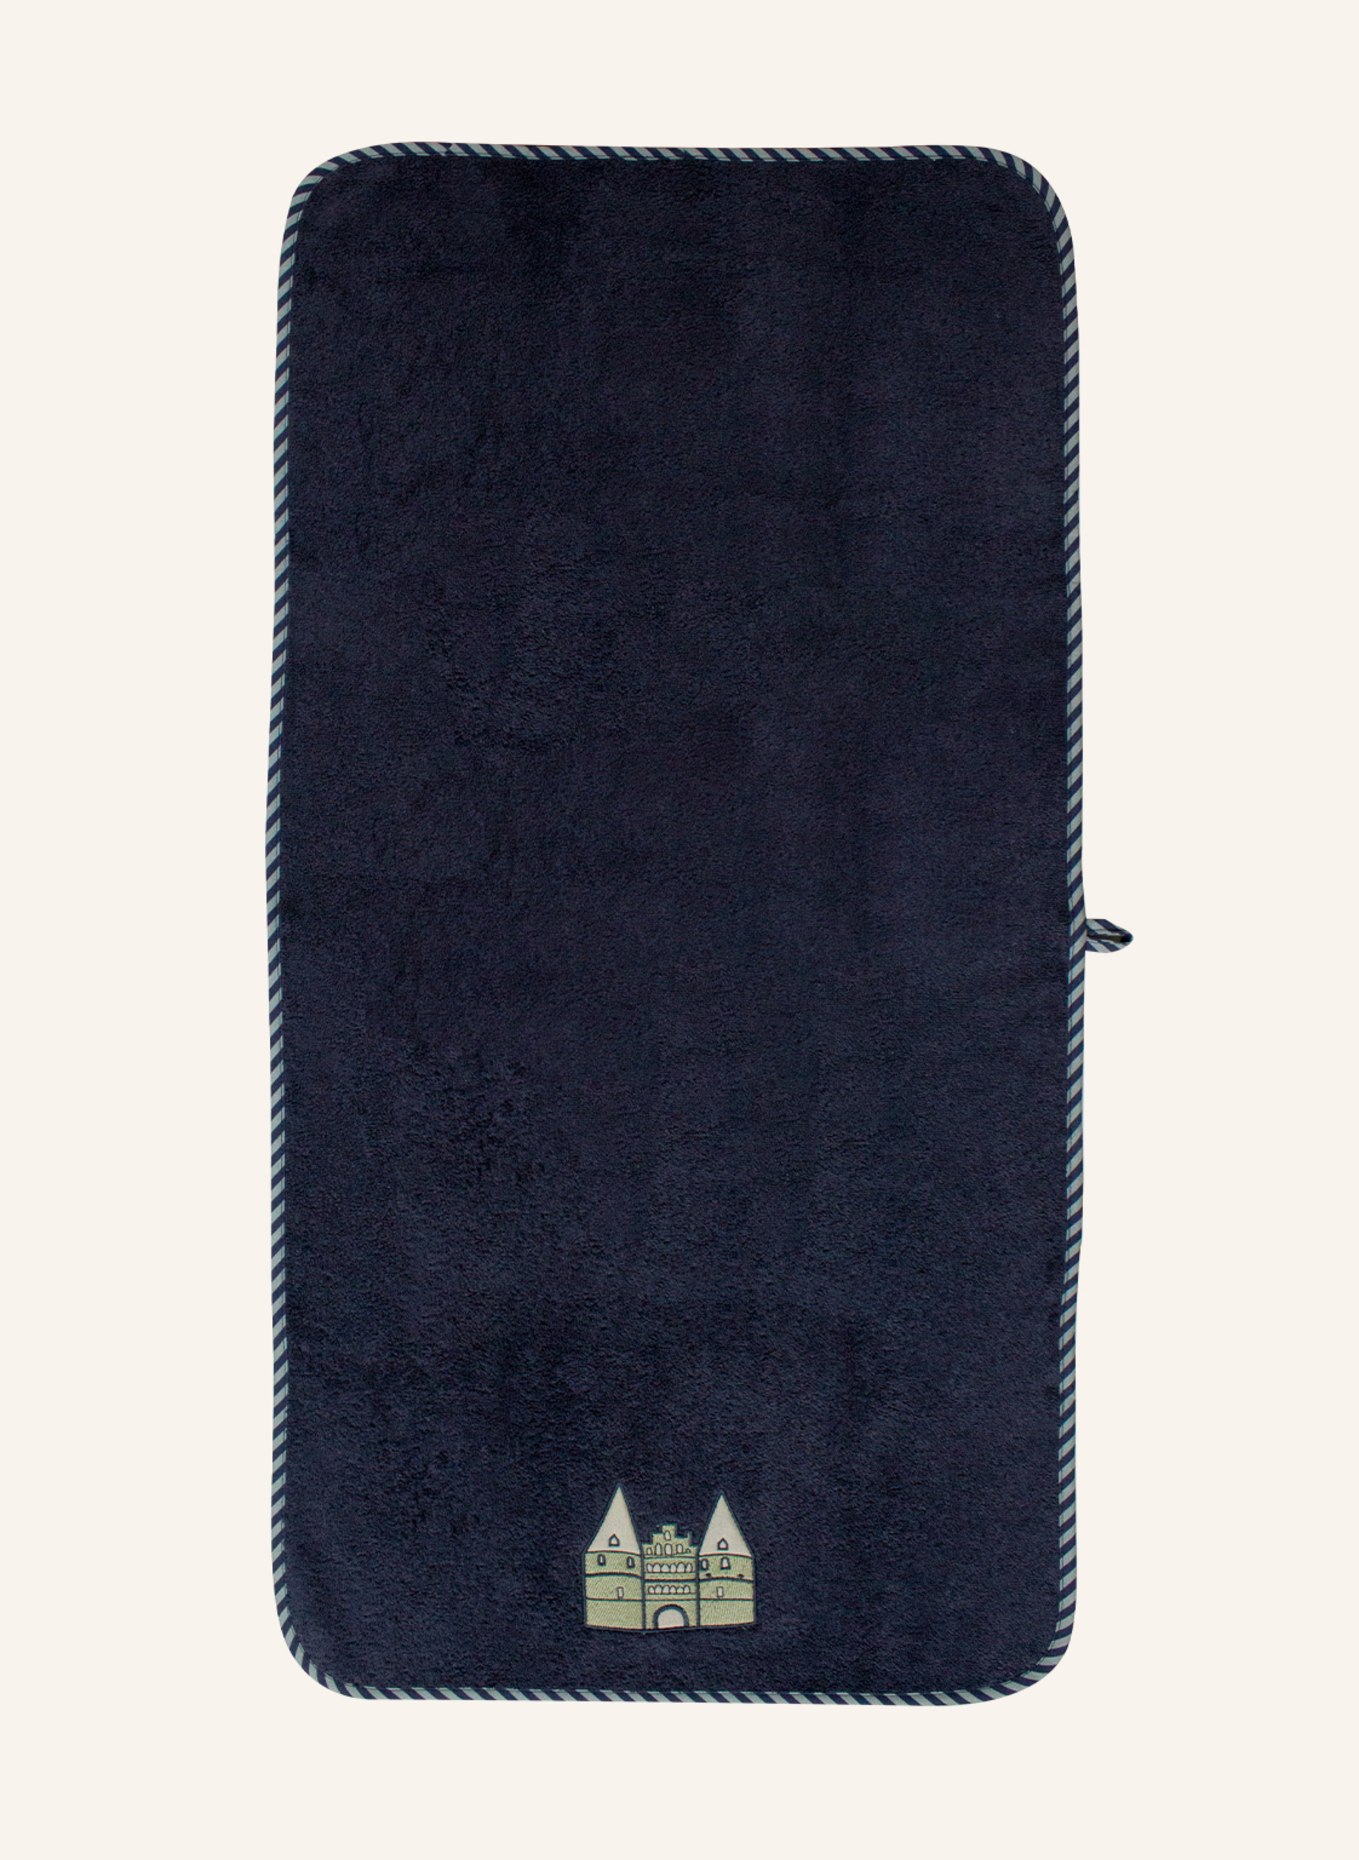 KATHA Covers Handtuch HOLSTENTOR, Farbe: BLAU (Bild 1)